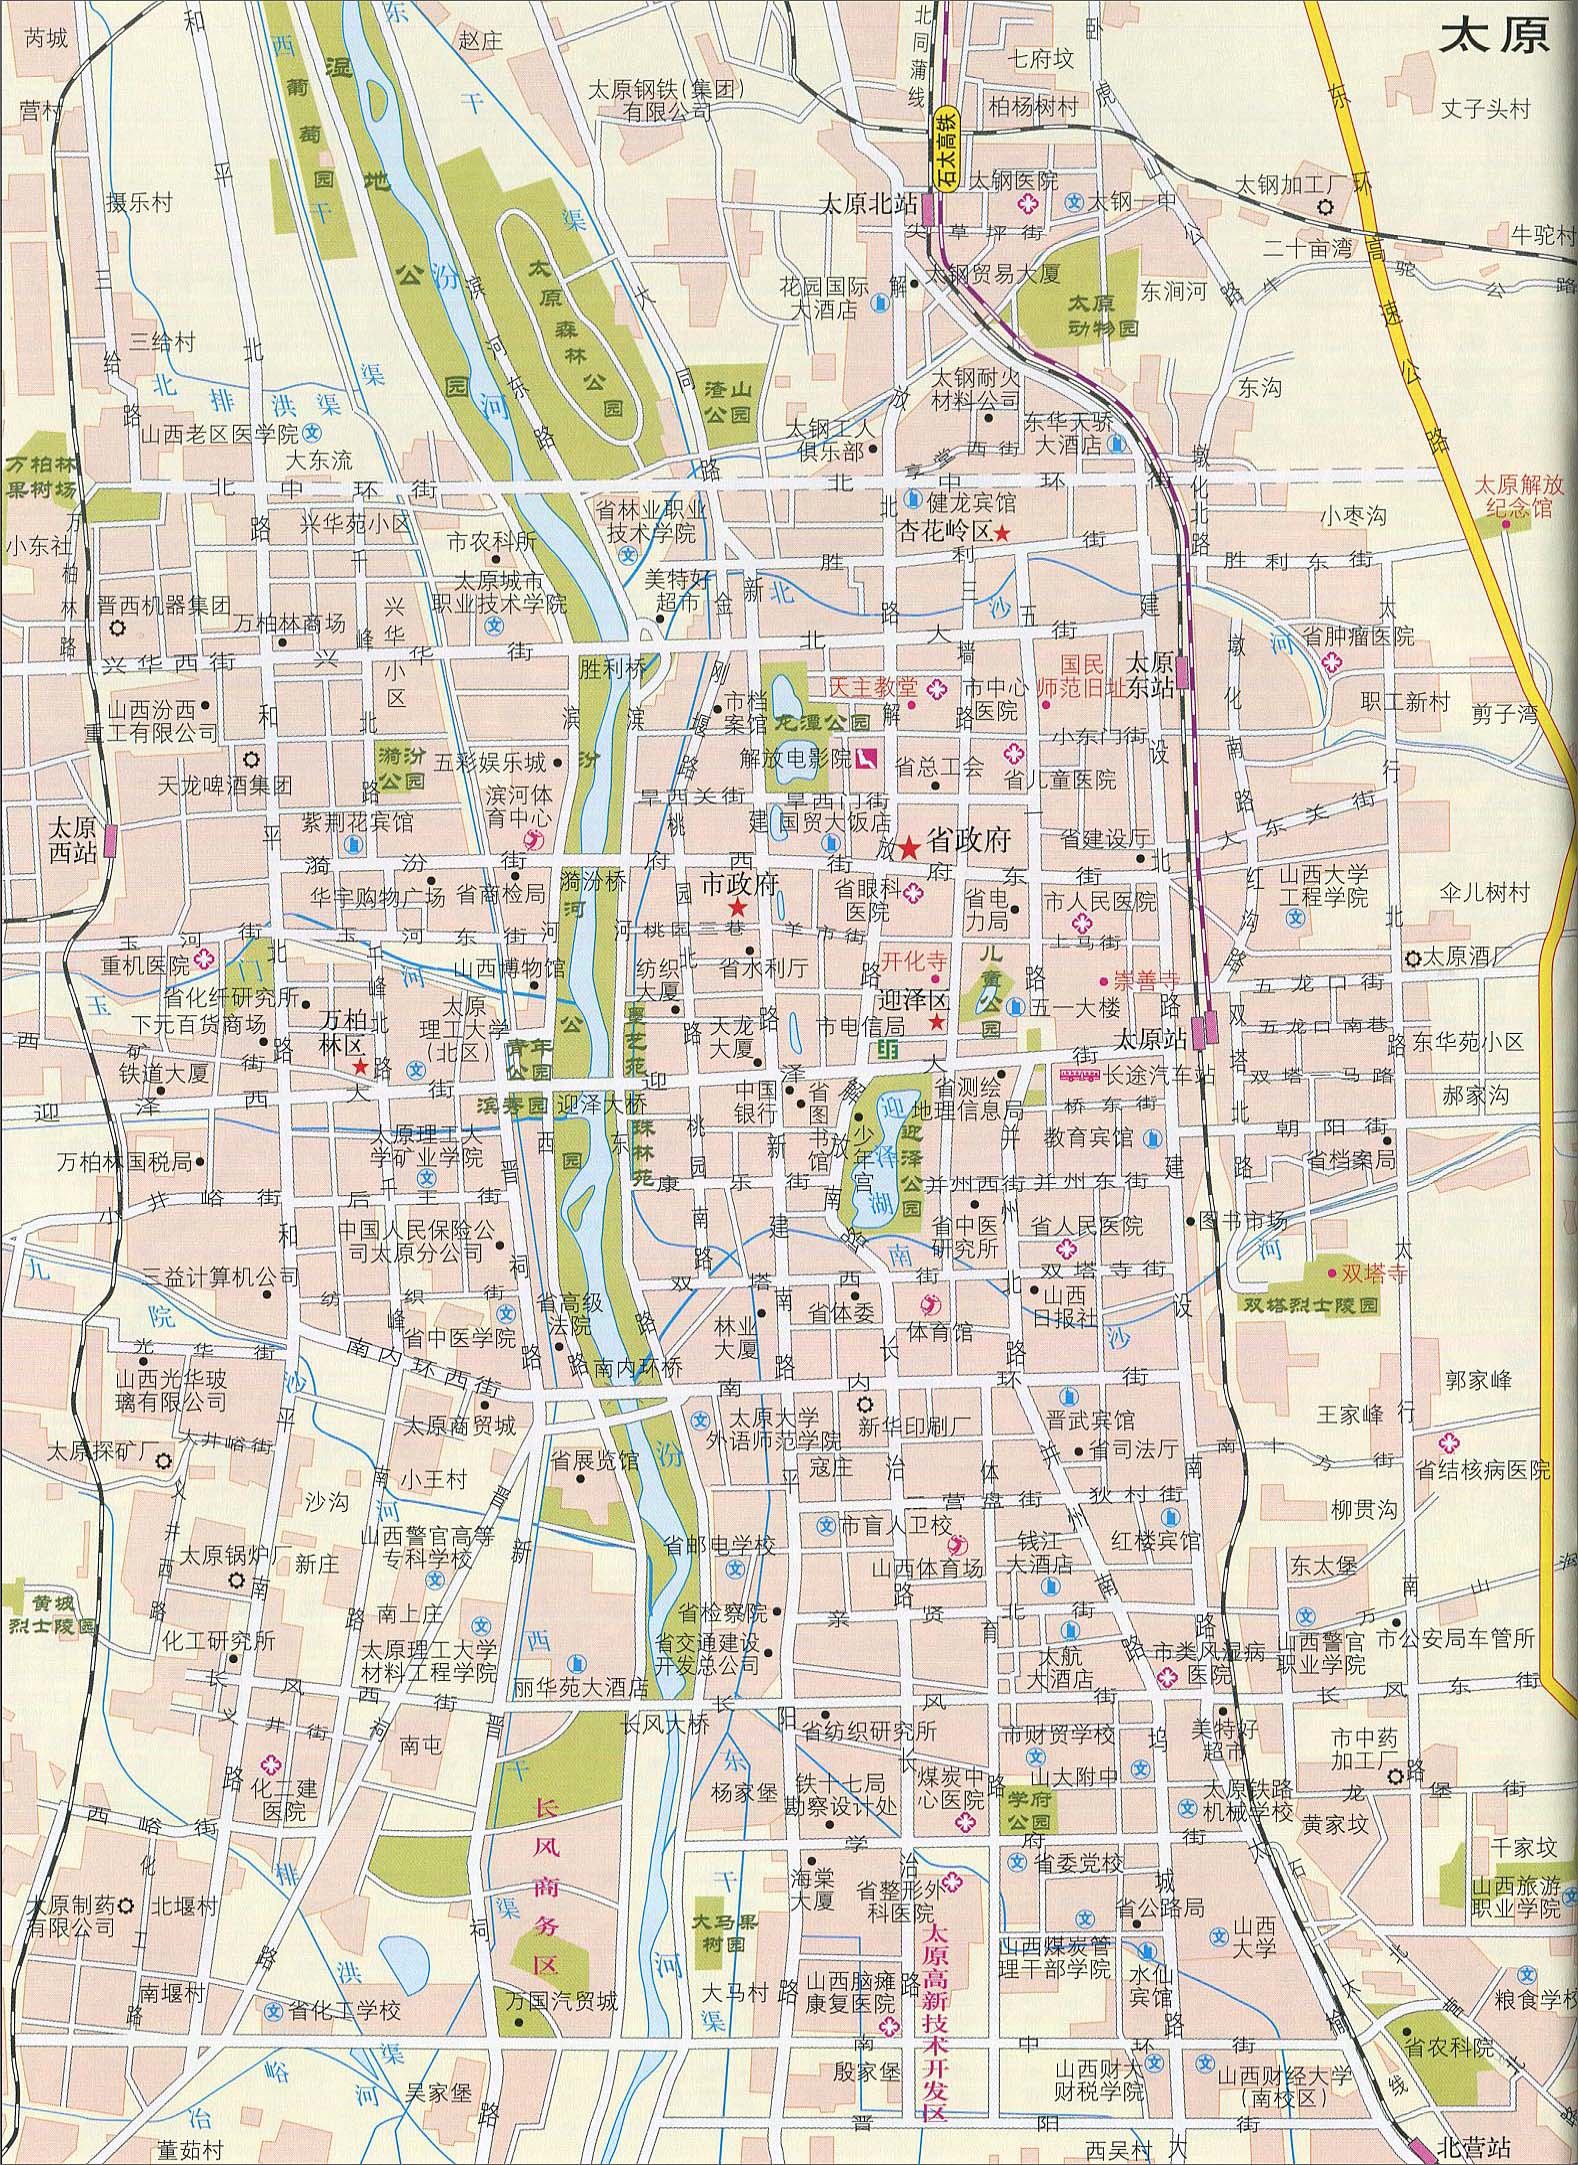 中国地图 山西 太原市 >> 太原地图地形版 栏目导航: 太原市  大同市